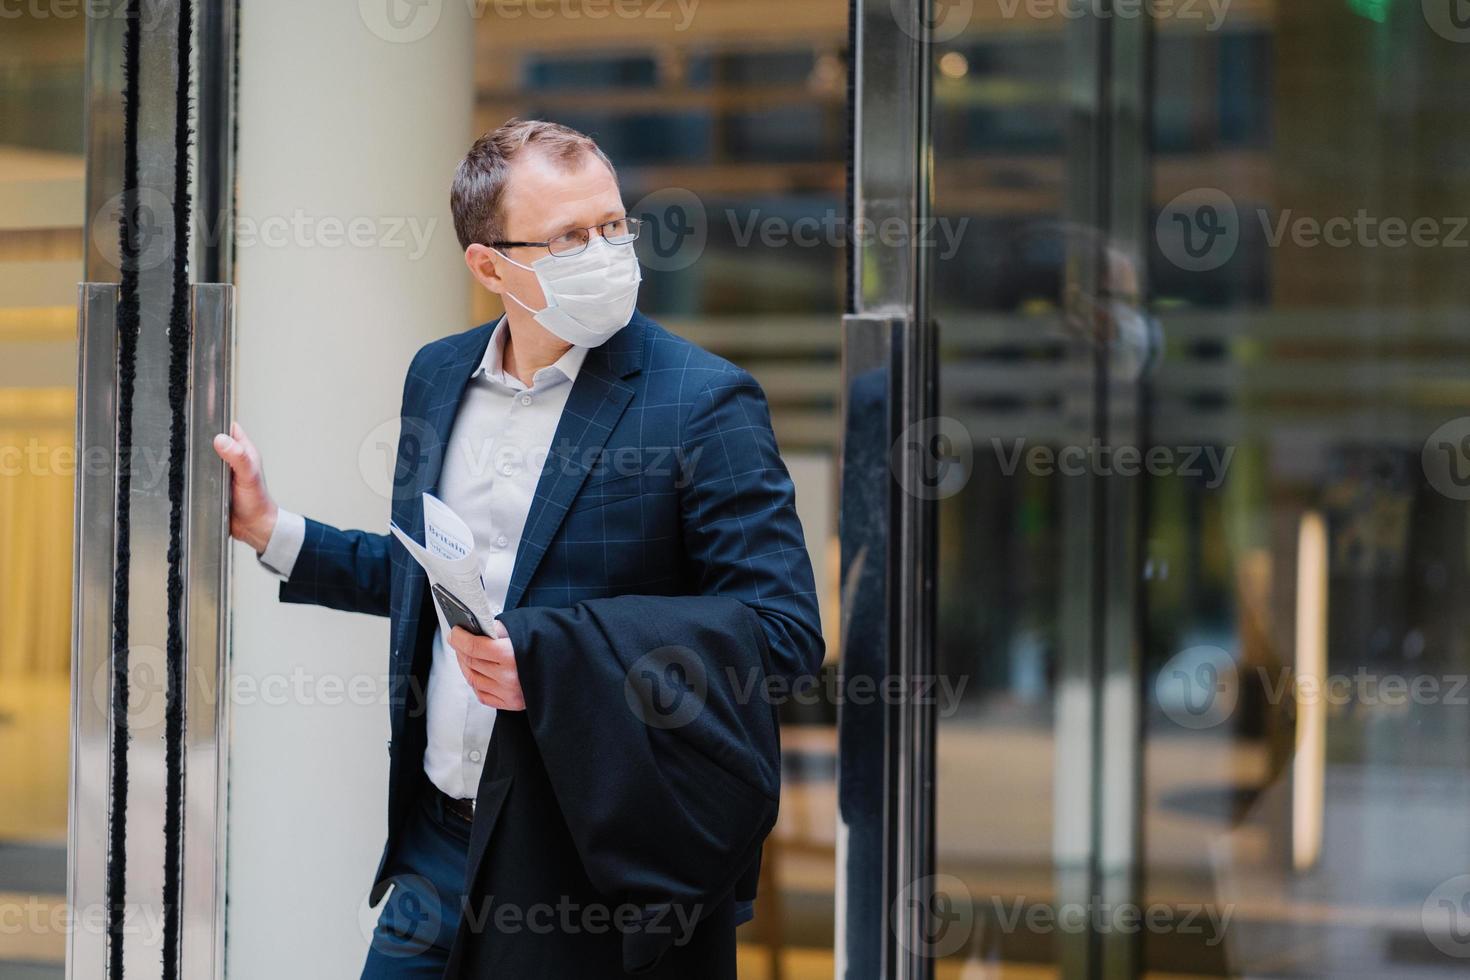 protection respiratoire, coronavirus, maladie dangereuse. un homme sérieux se tient dans les portes d'un immeuble de bureaux, porte un masque médical, tient un téléphone portable moderne, un journal pour lire un article sur le traitement covid-19 photo